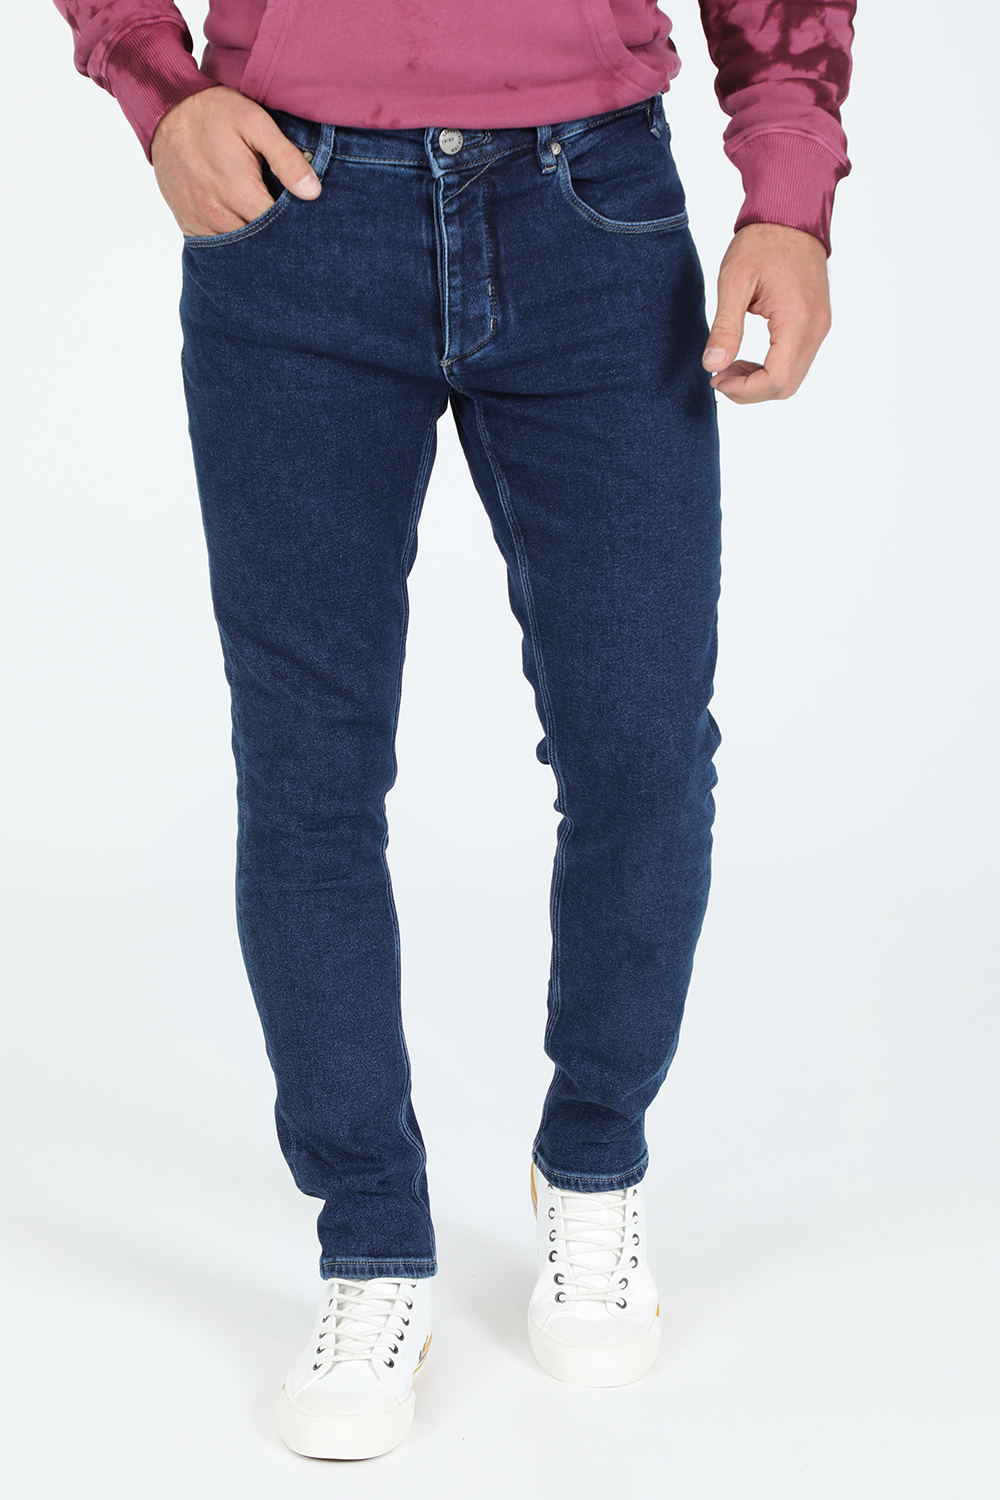 Ανδρικά/Ρούχα/Τζίν/Skinny GABBA - Ανδρικό jean παντελόνι GABBA Rey K3868 μπλε